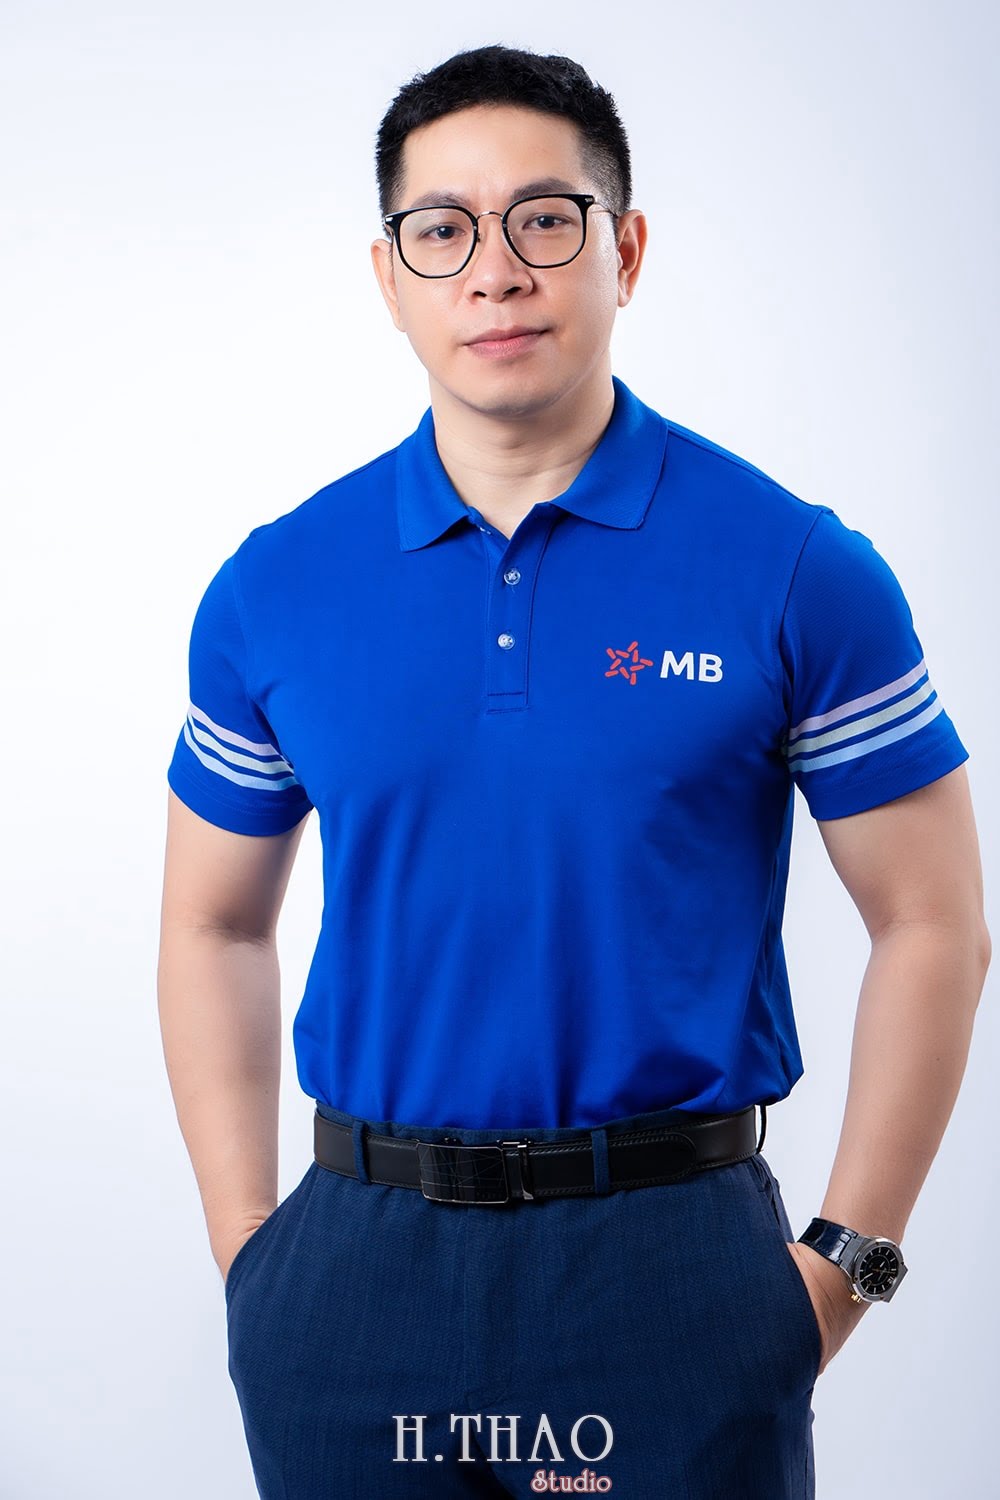 giam doc ngan hang 8 - Tổng hợp ảnh profile nghề nghiệp bác sĩ, ngân hàng đẹp- HThao Studio